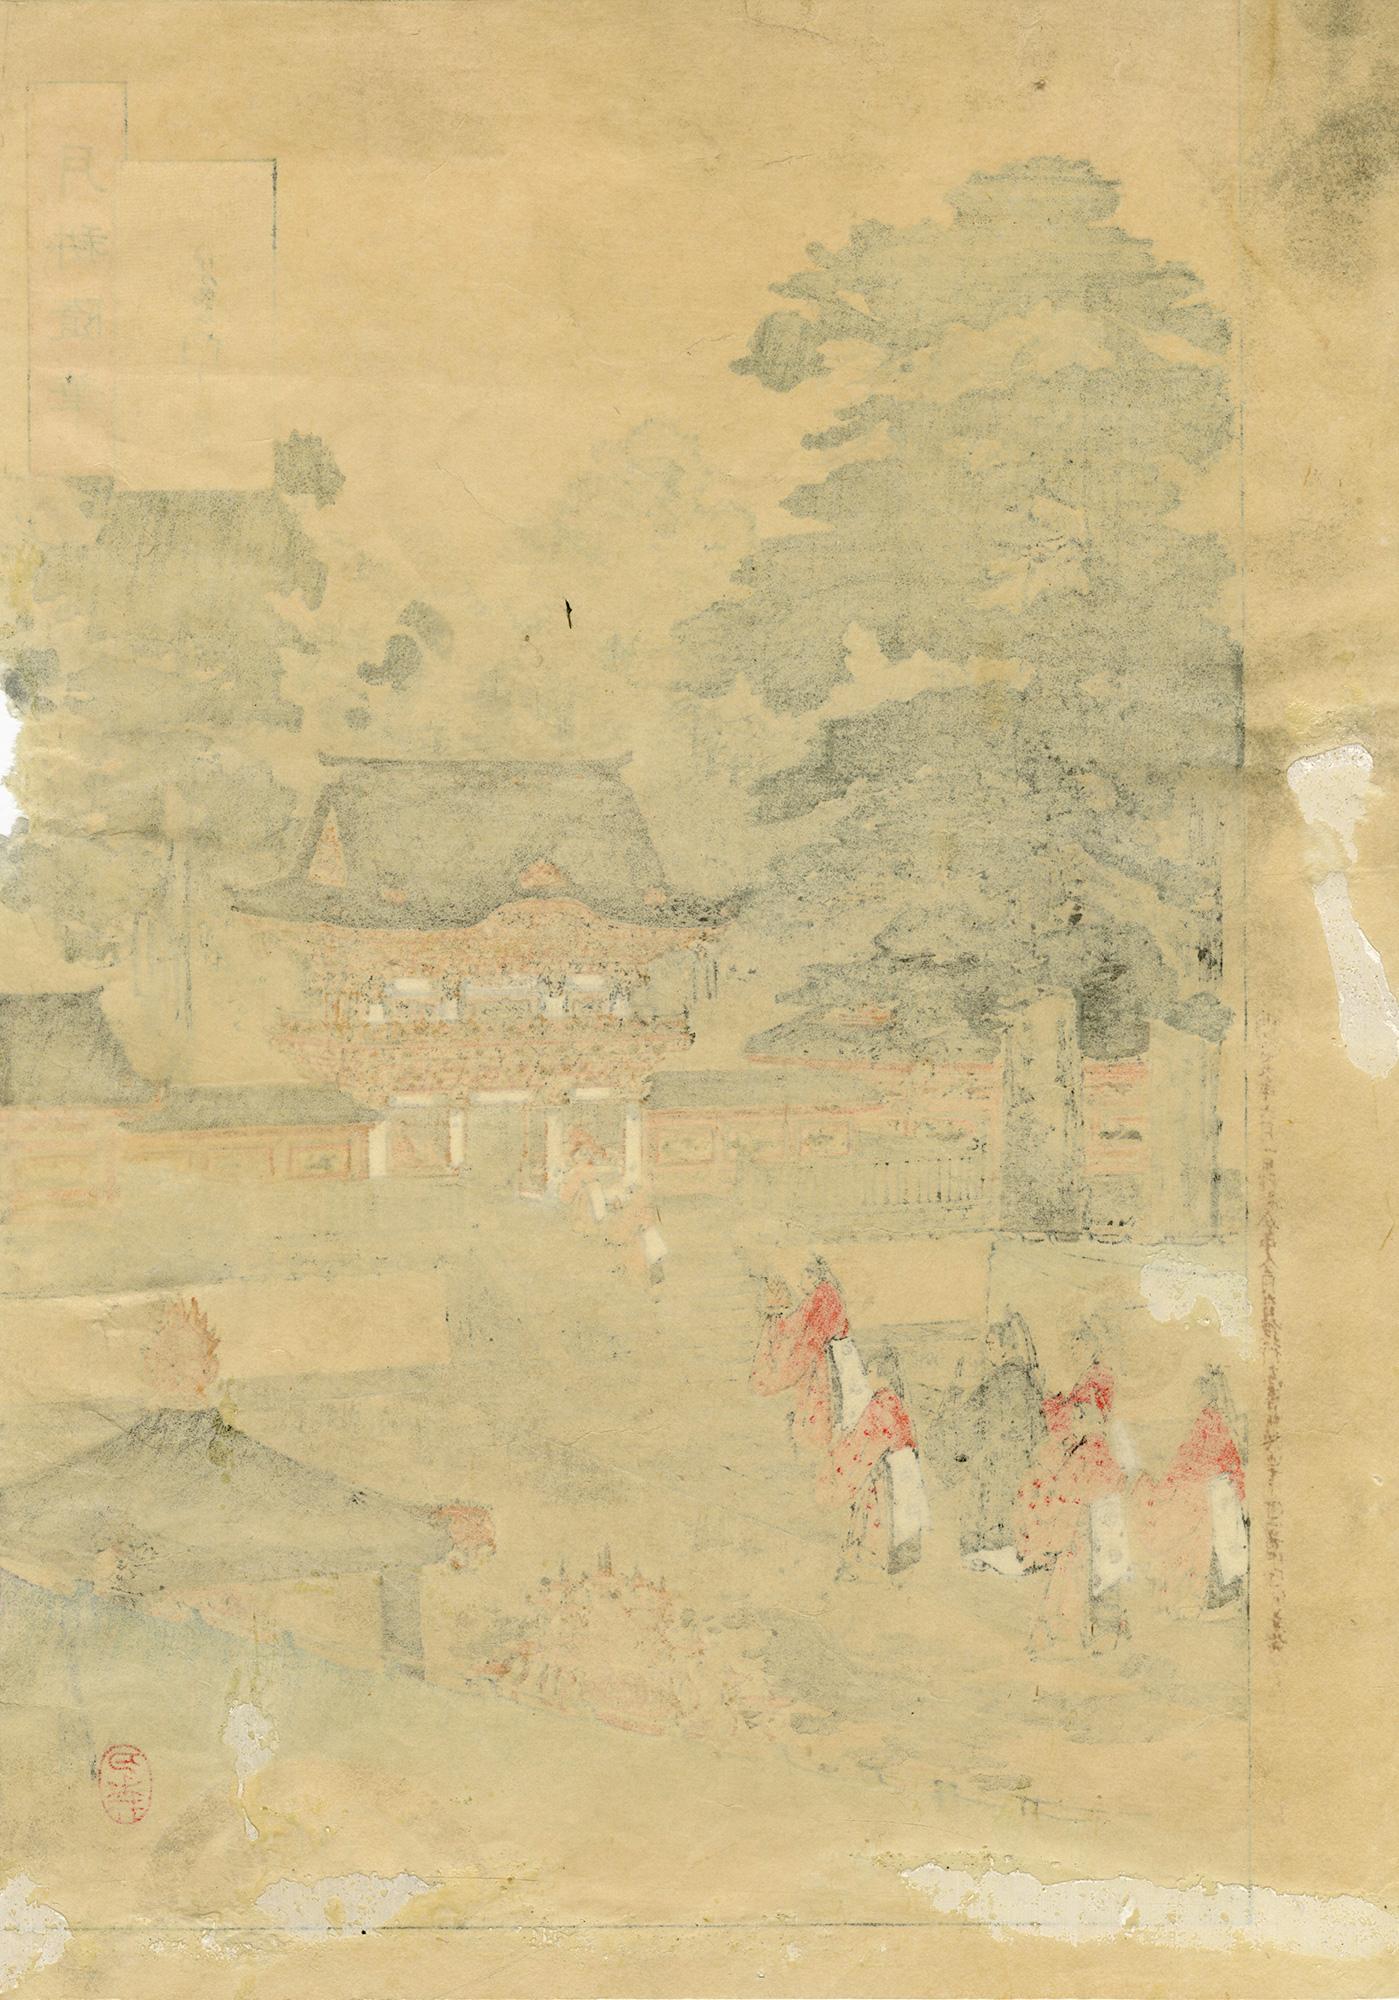 Sanctuaire de Toshogu - Print de Ogata Gekko